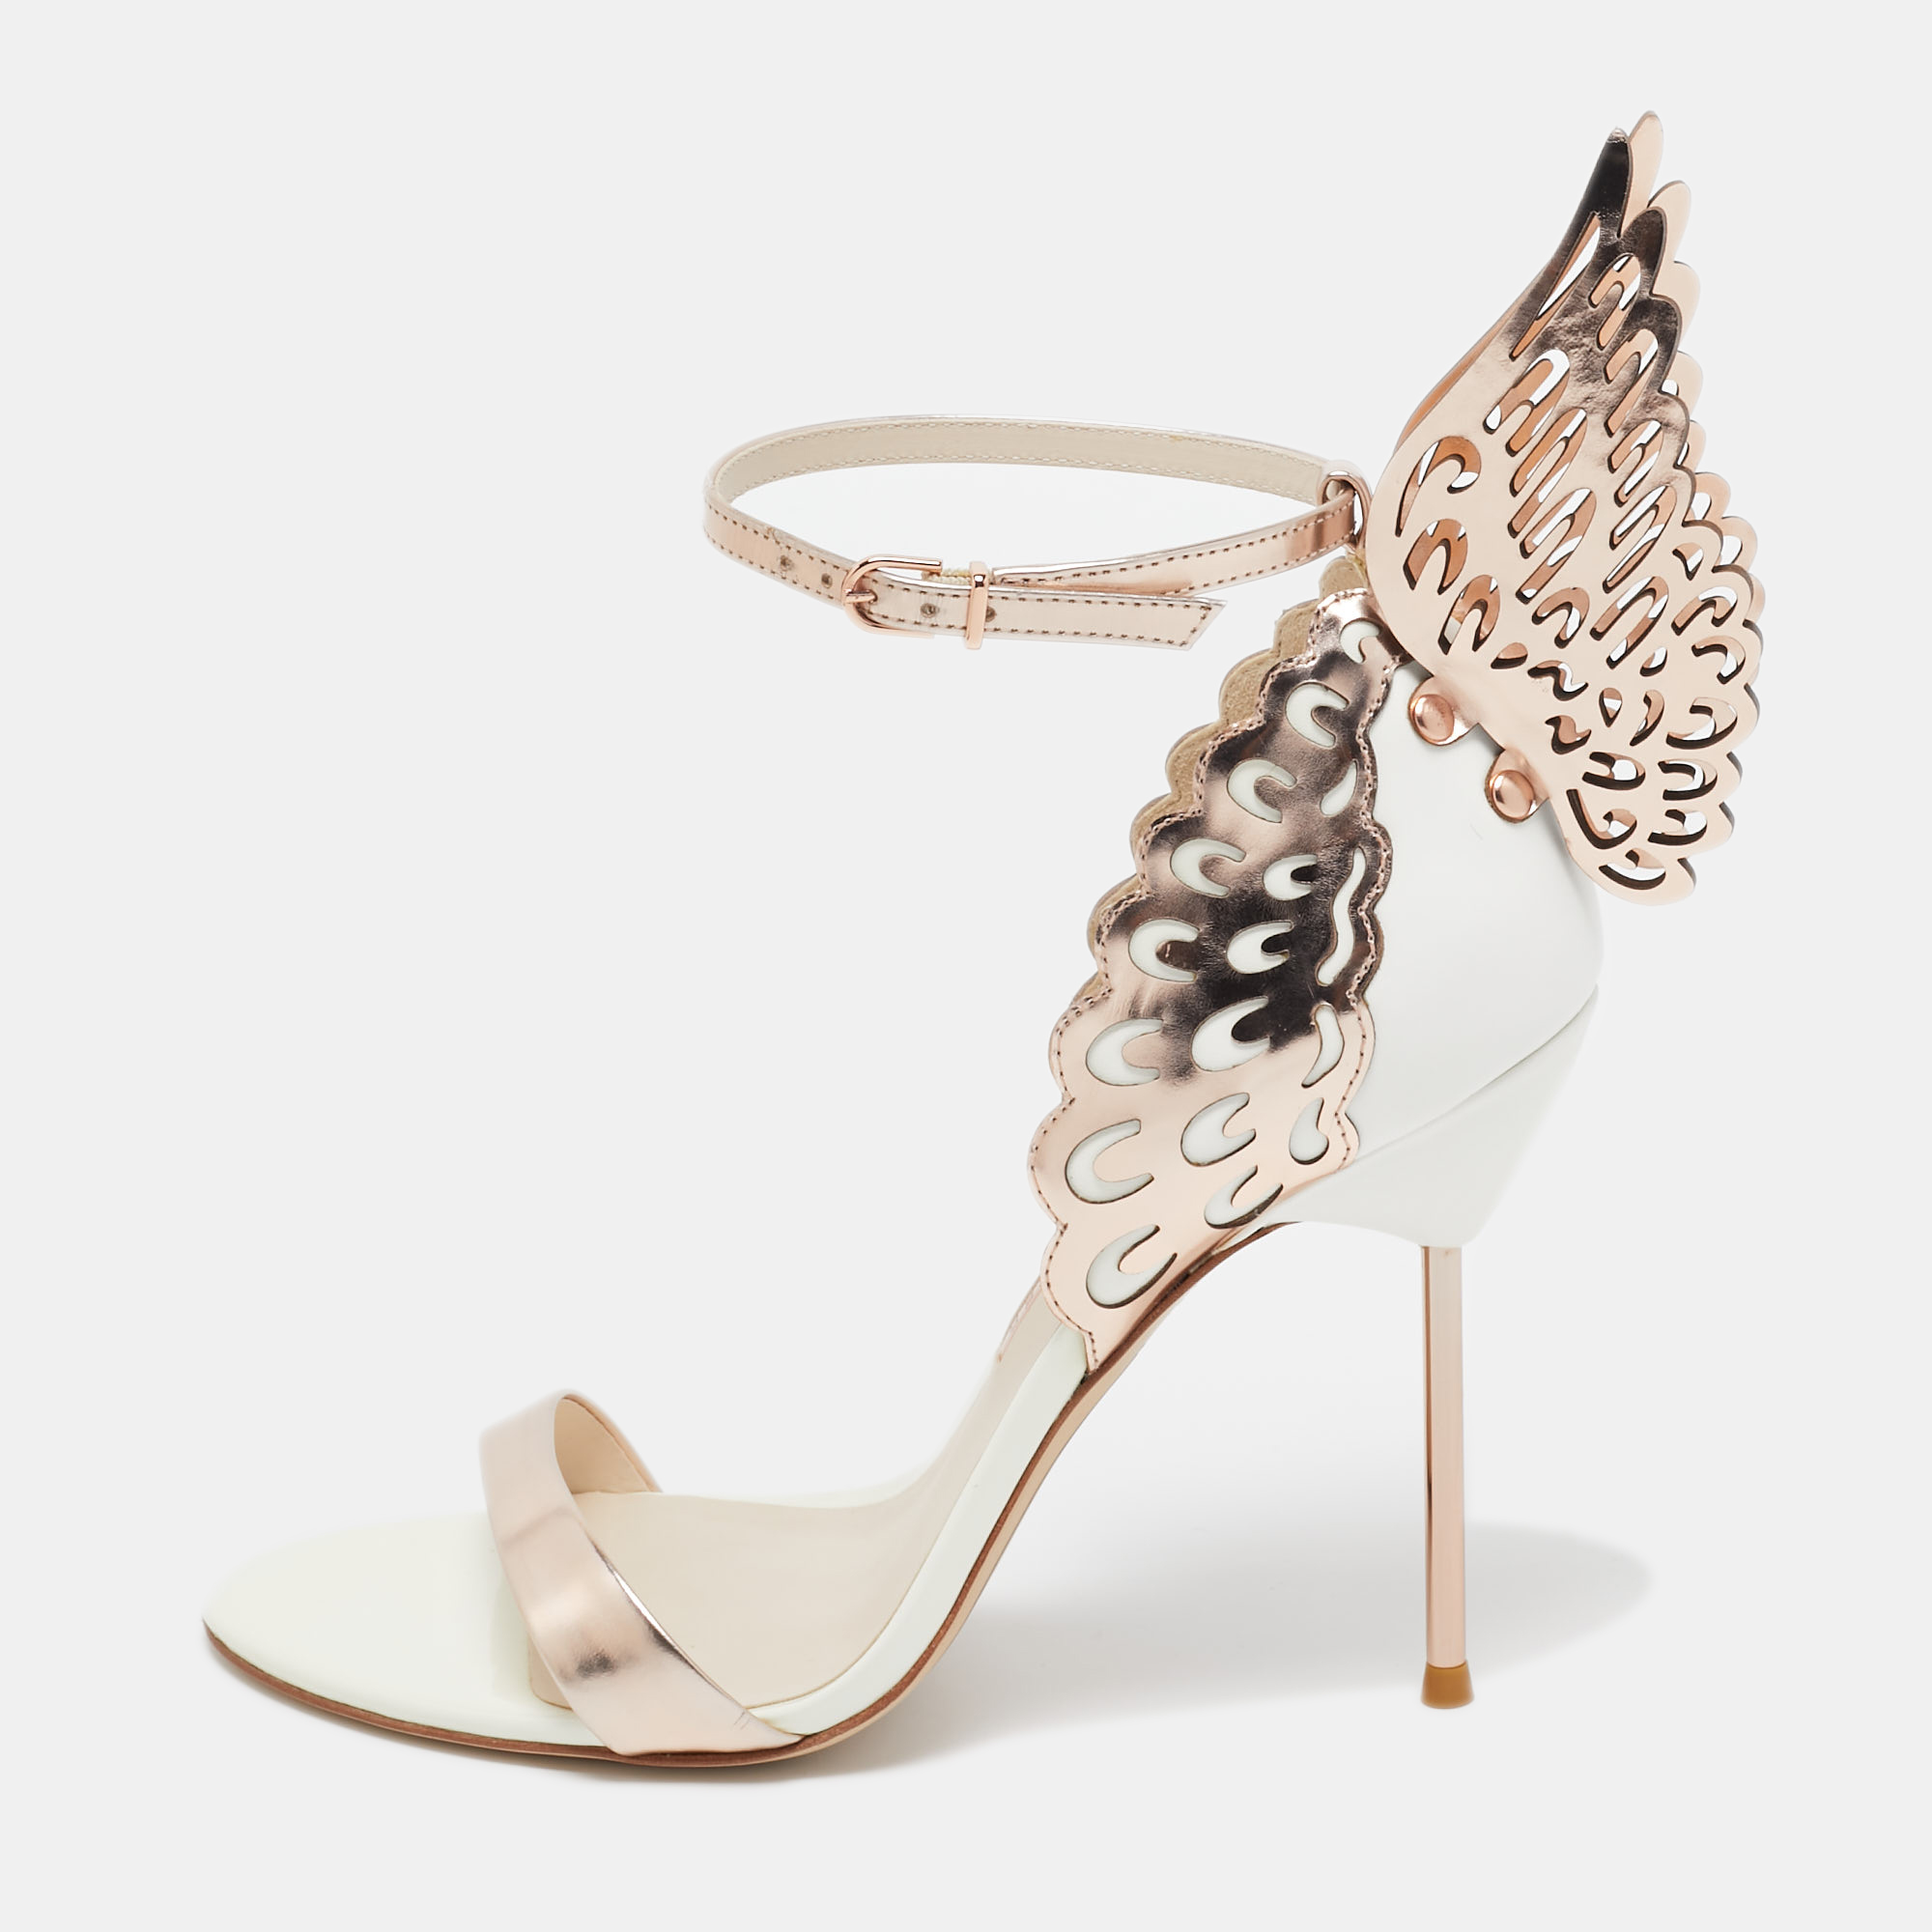 

Sophia Webster Gold/White Leather Evangeline Ankle Strap Sandals Size